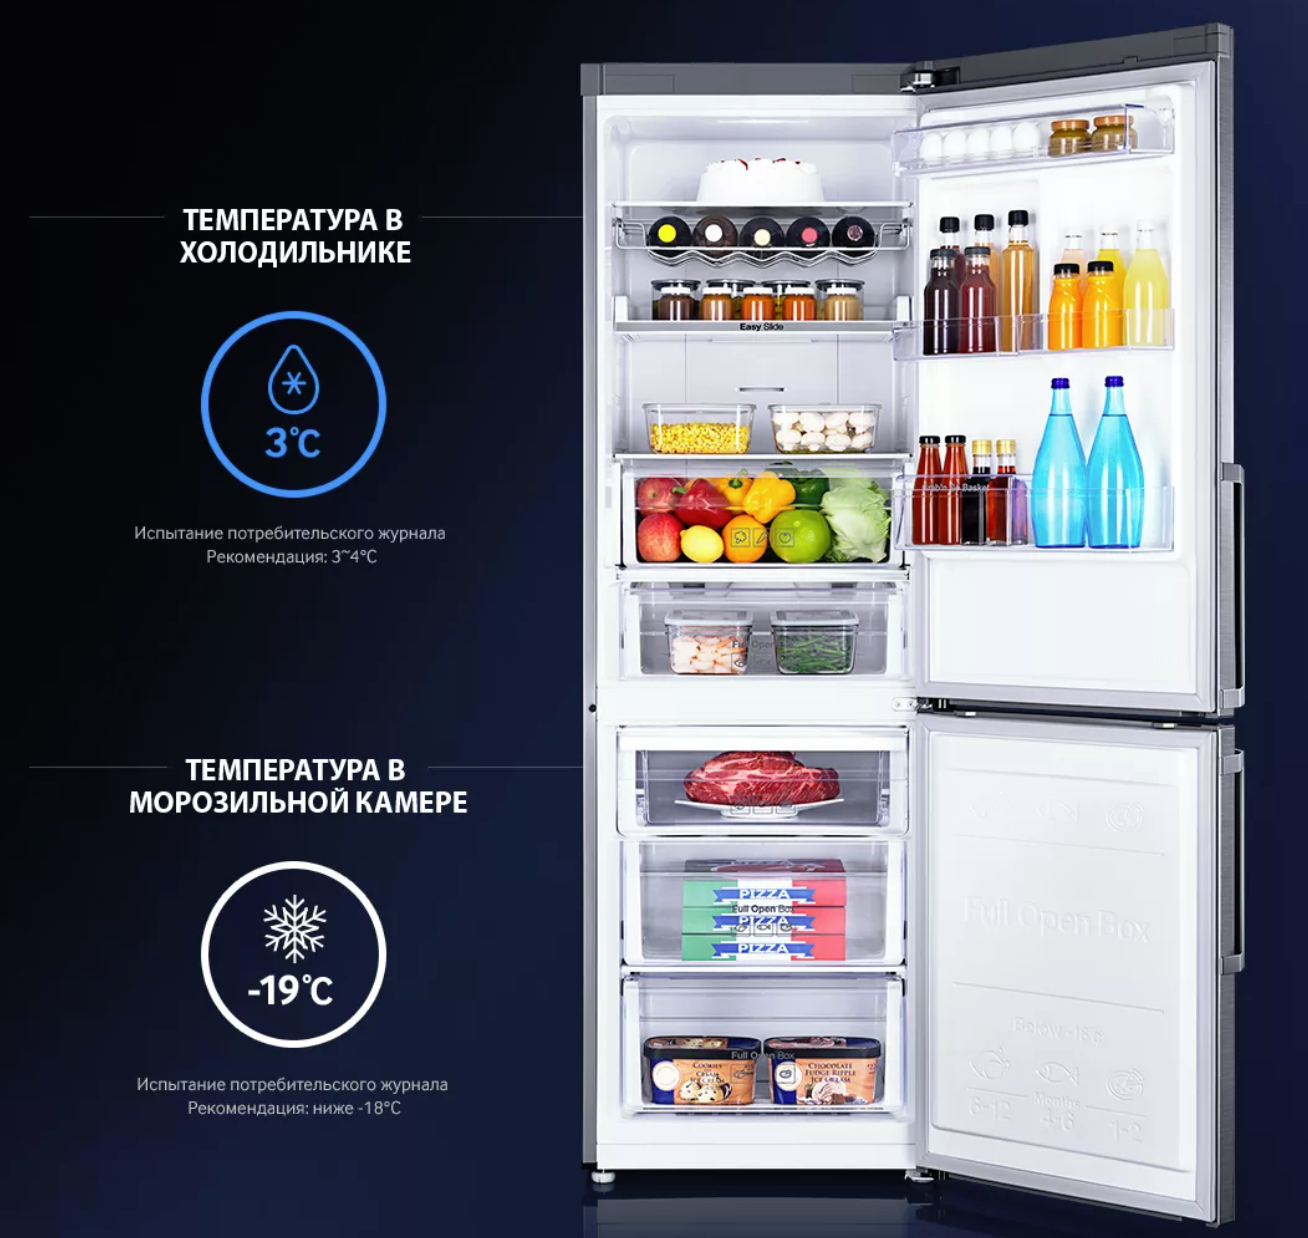 Какая температура должна быть в морозильной камере холодильника LG?